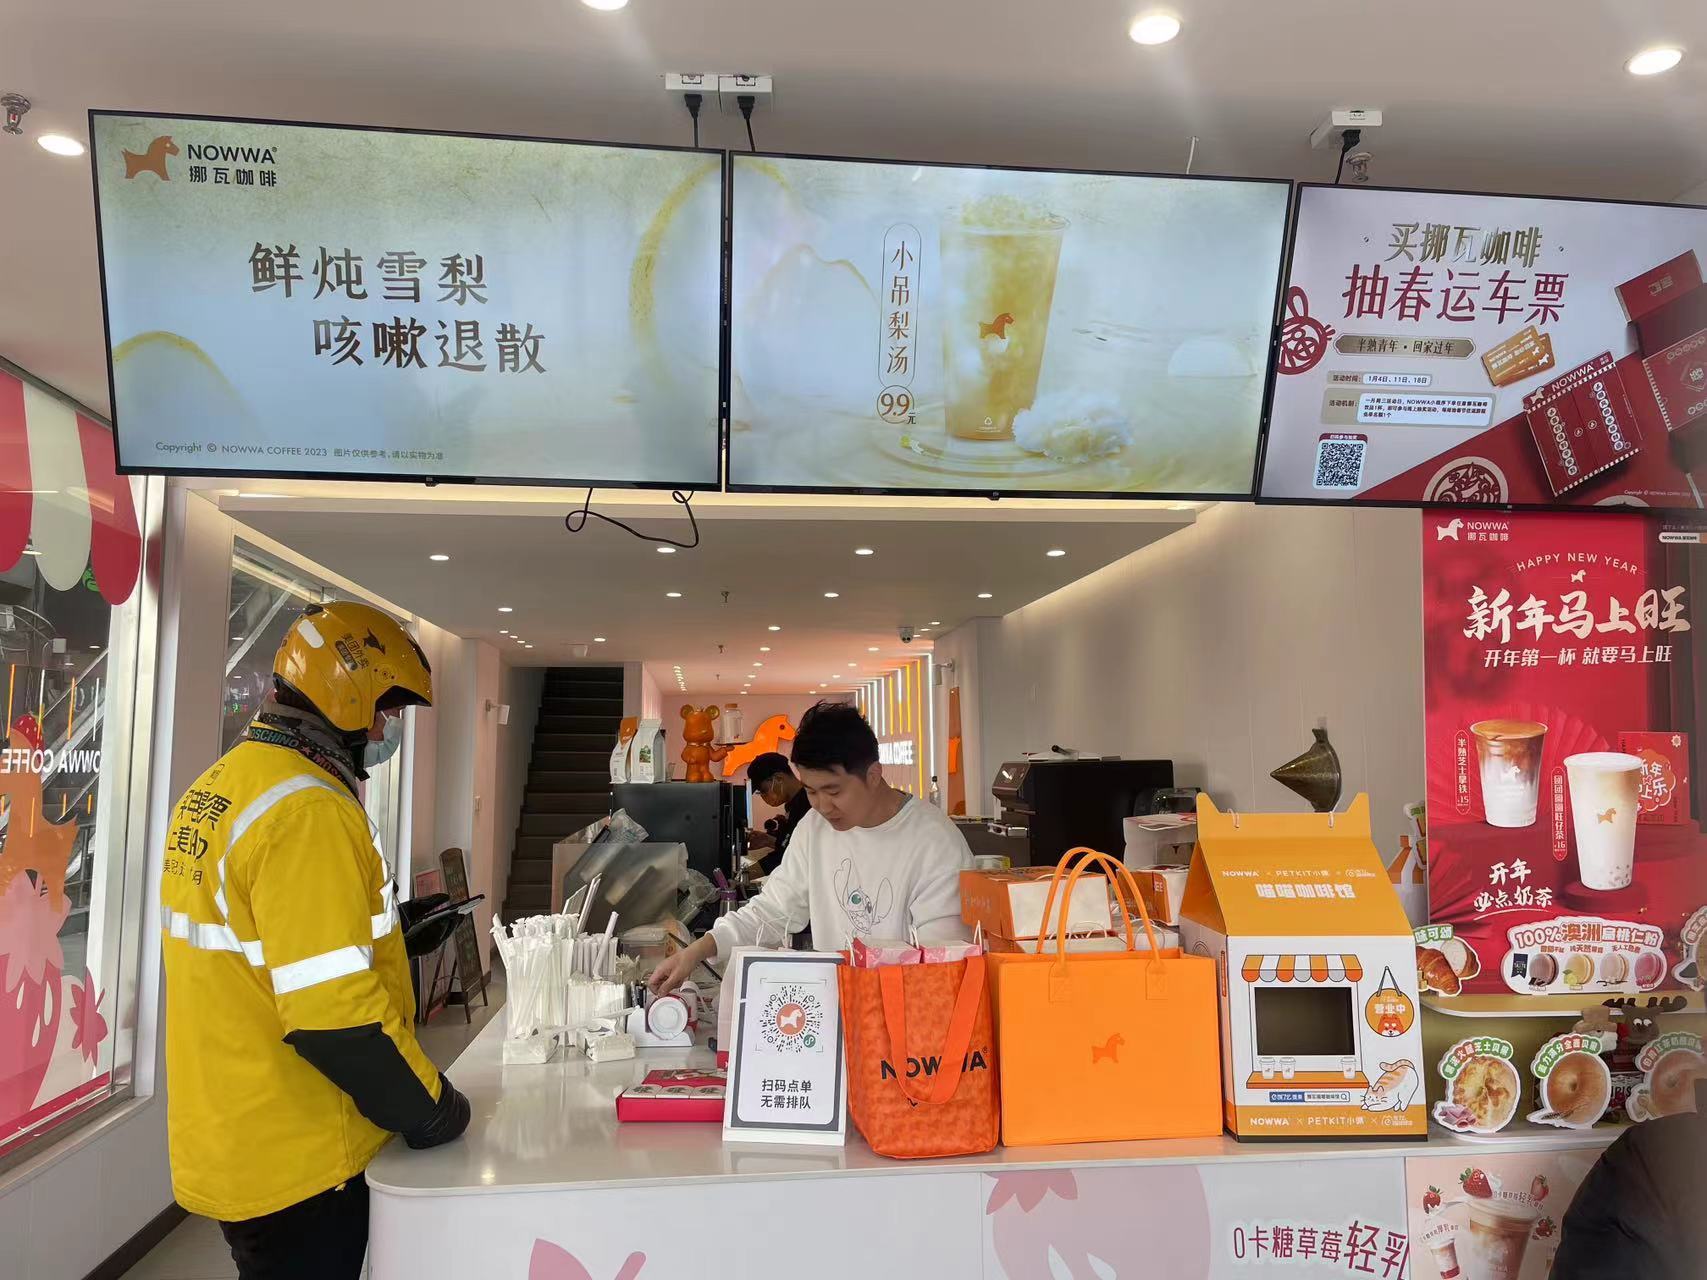 一个咖啡奶茶鏖战县城的样本：30米内开店11家 瑞幸、喜茶磨刀霍霍(图2)